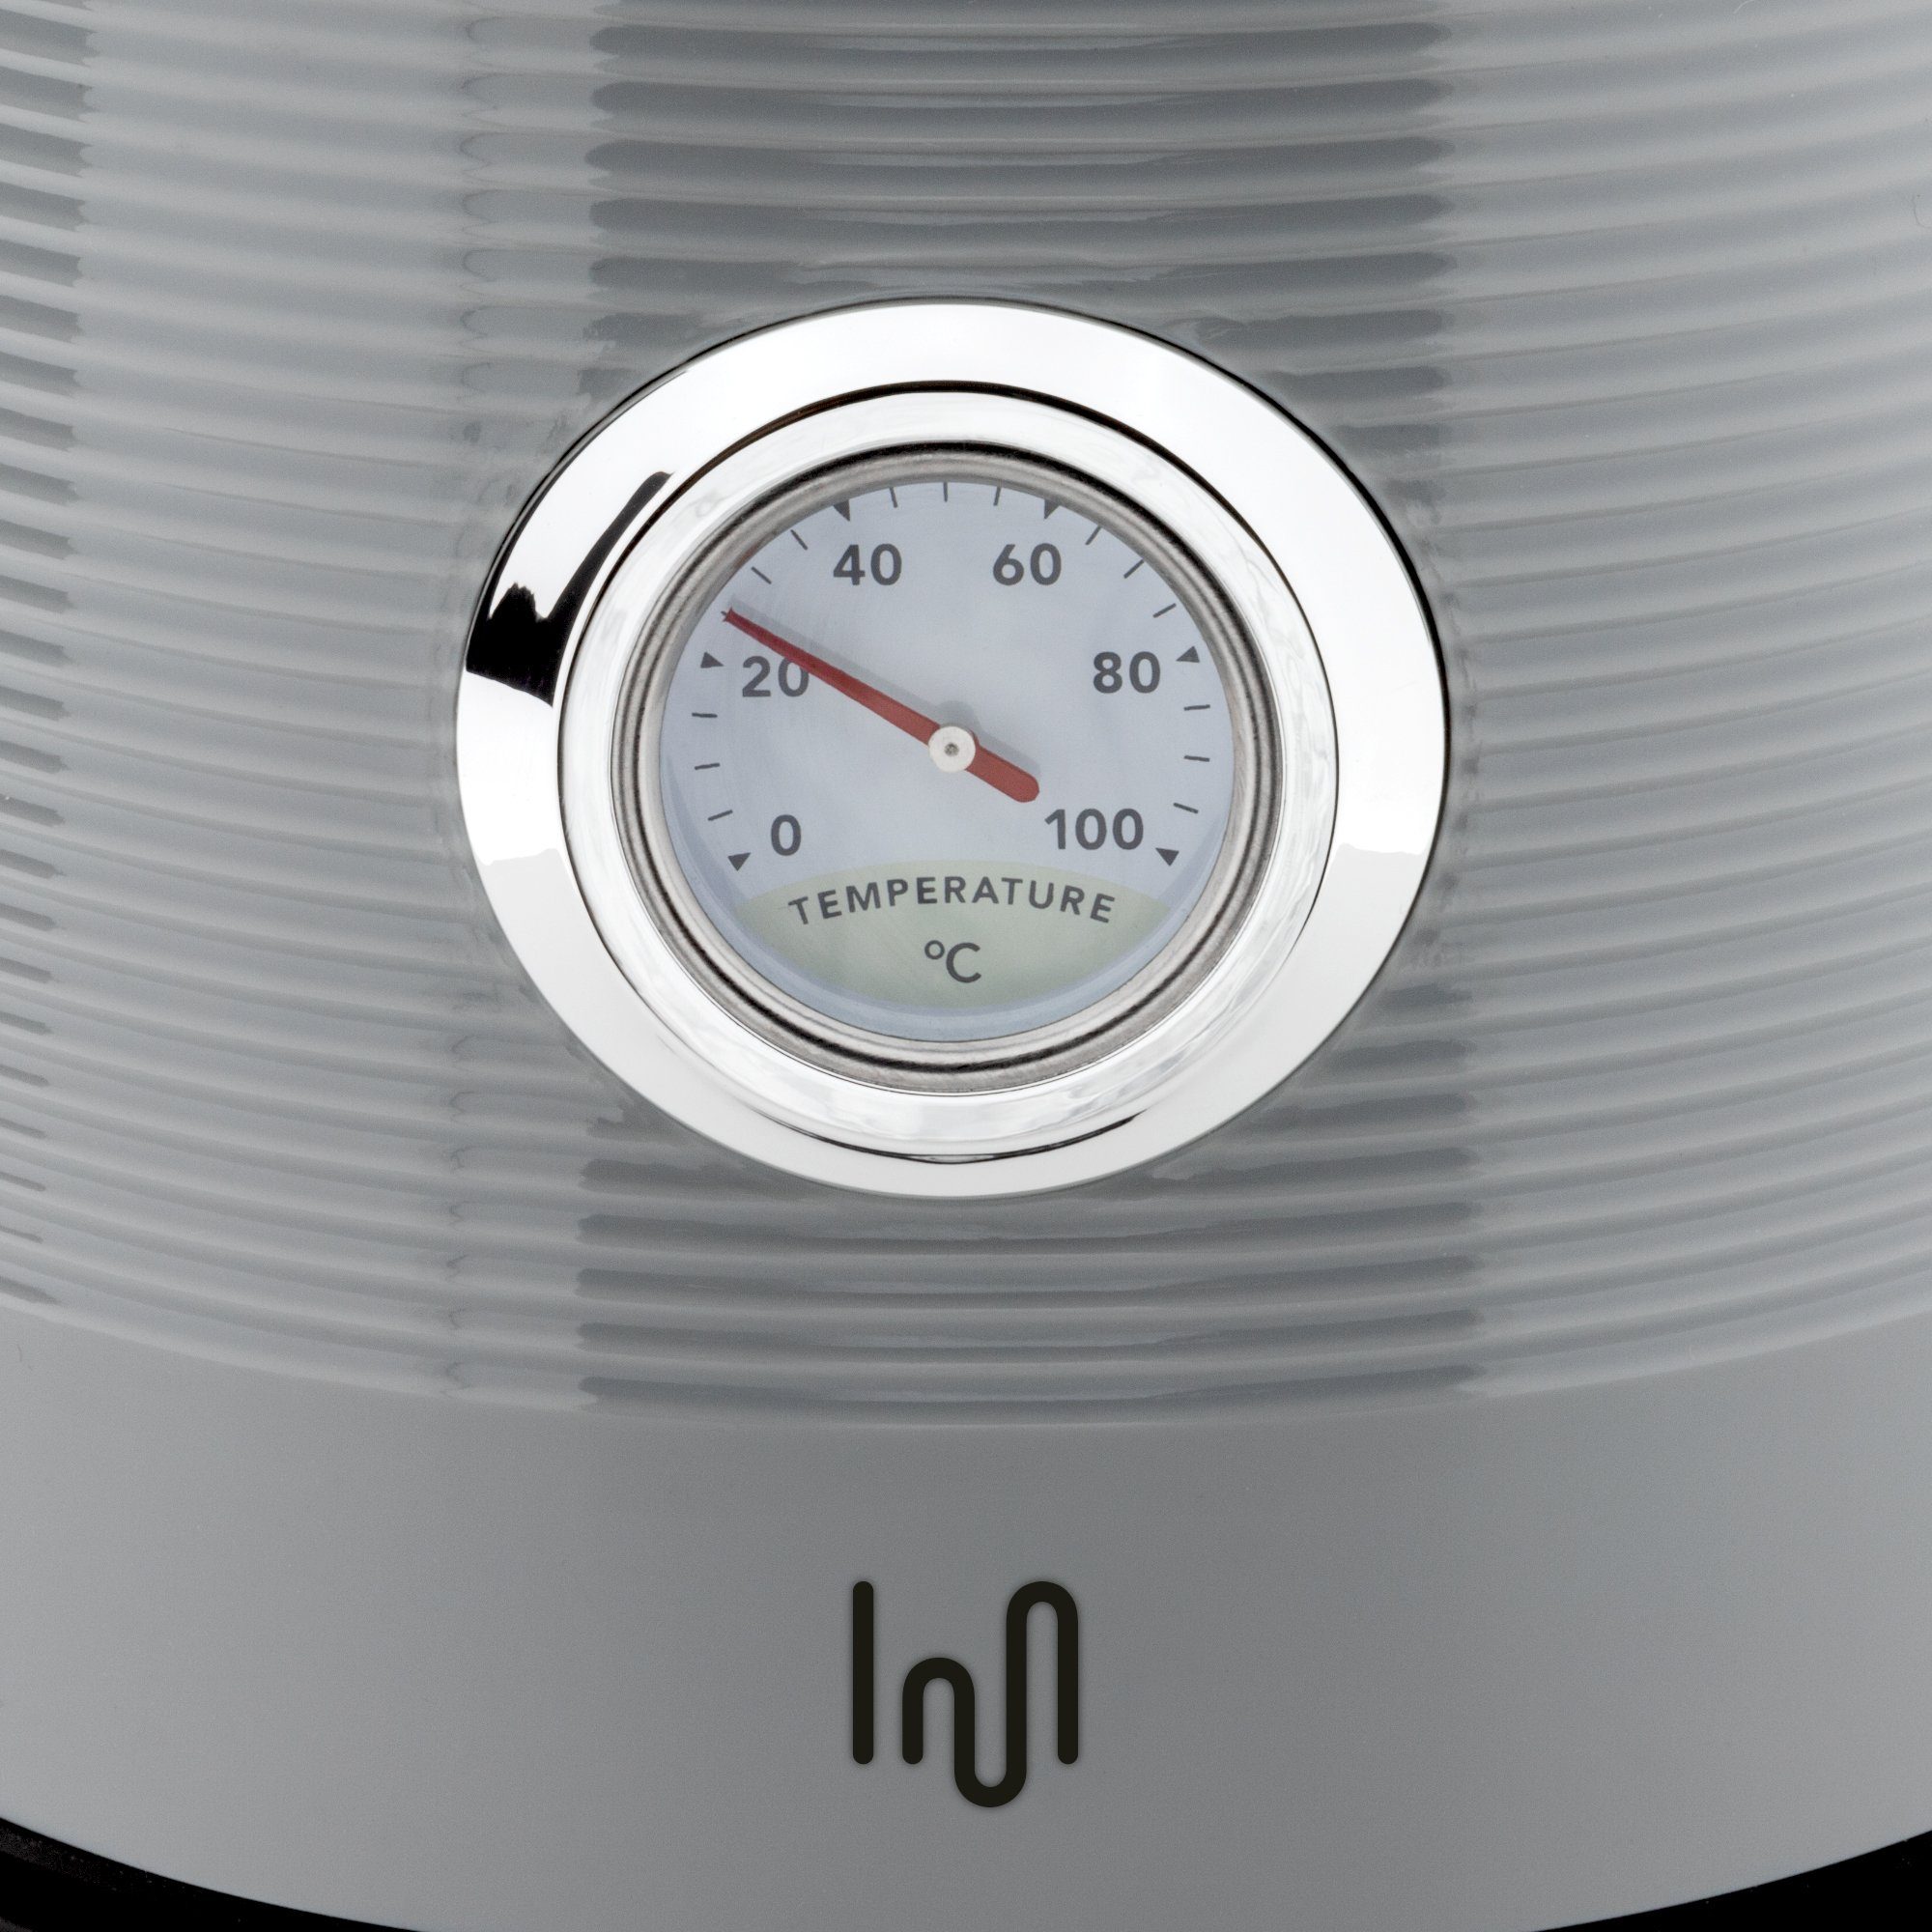 mit Impolio Edelstahl Analog-Thermometer, Wasser-/Teekocher Grau, W 1,7L Wasserkocher 2200